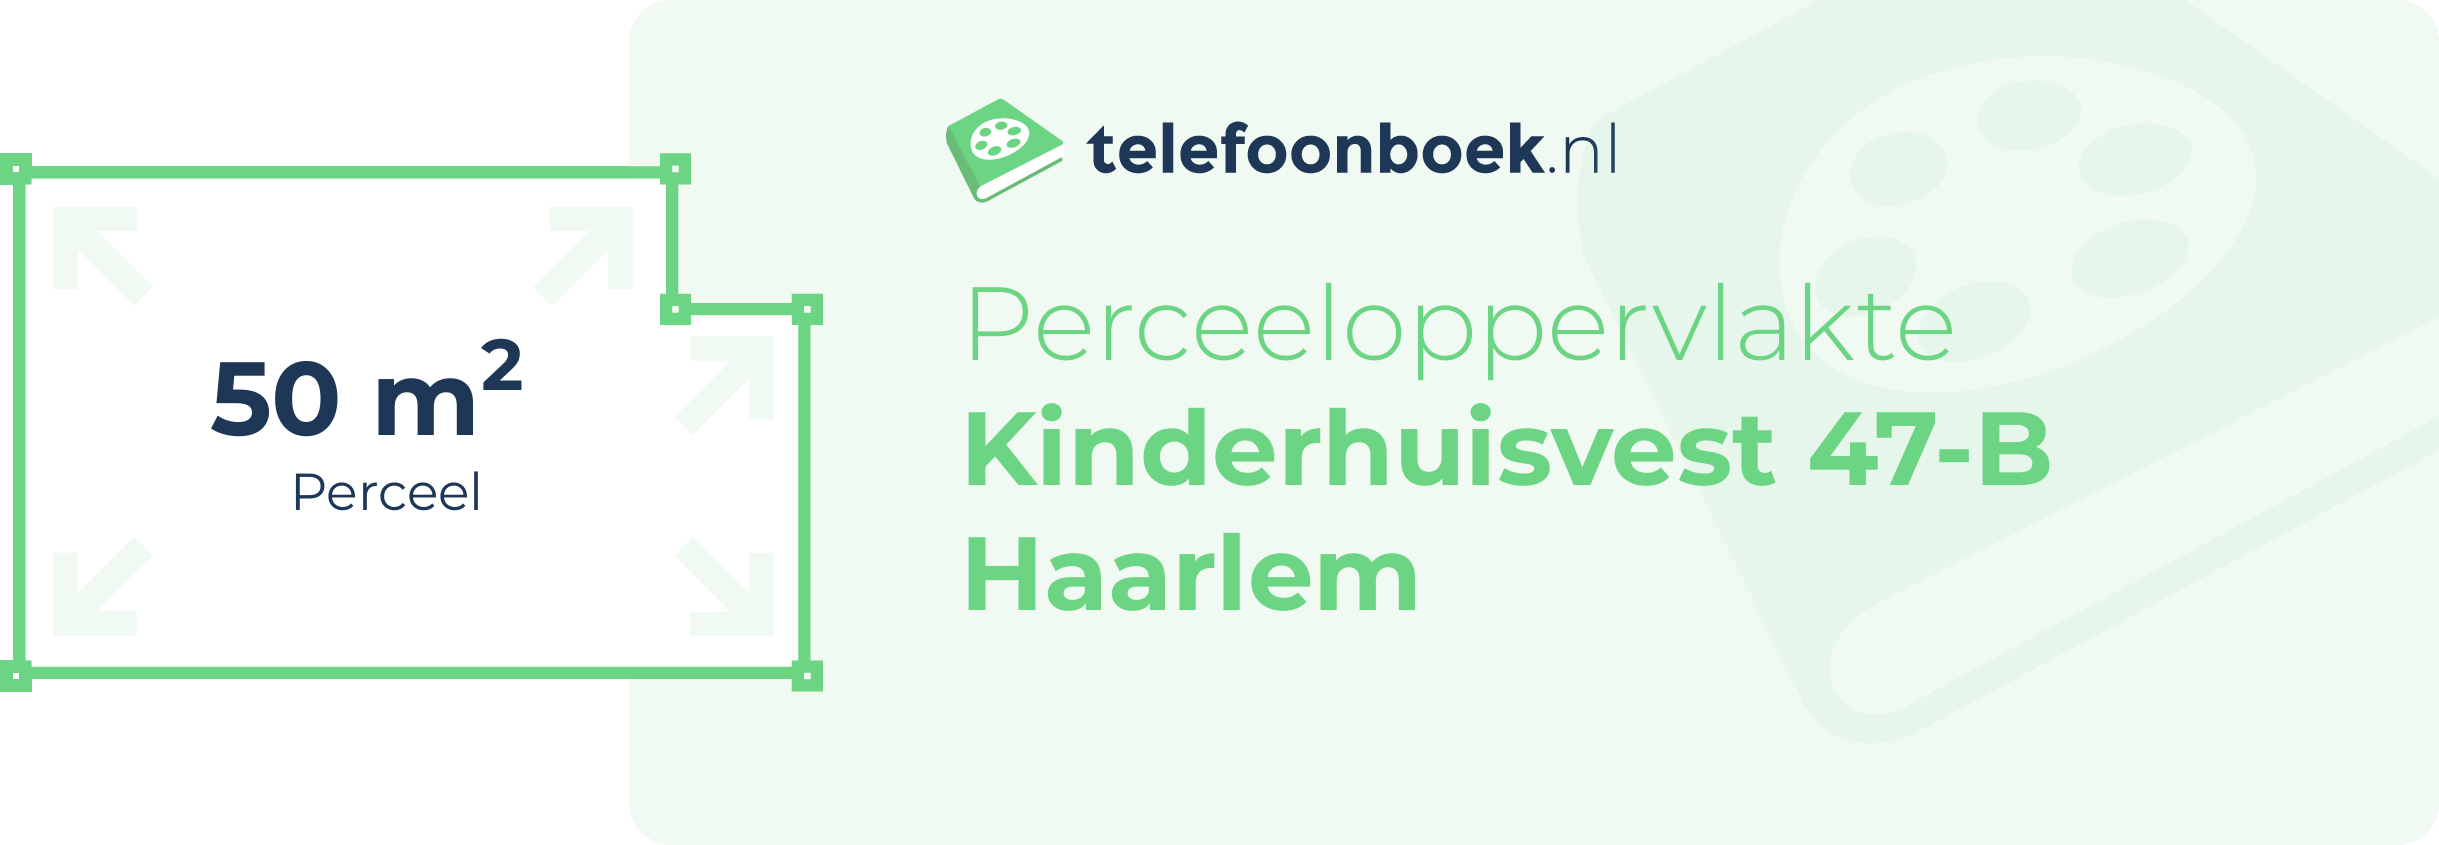 Perceeloppervlakte Kinderhuisvest 47-B Haarlem